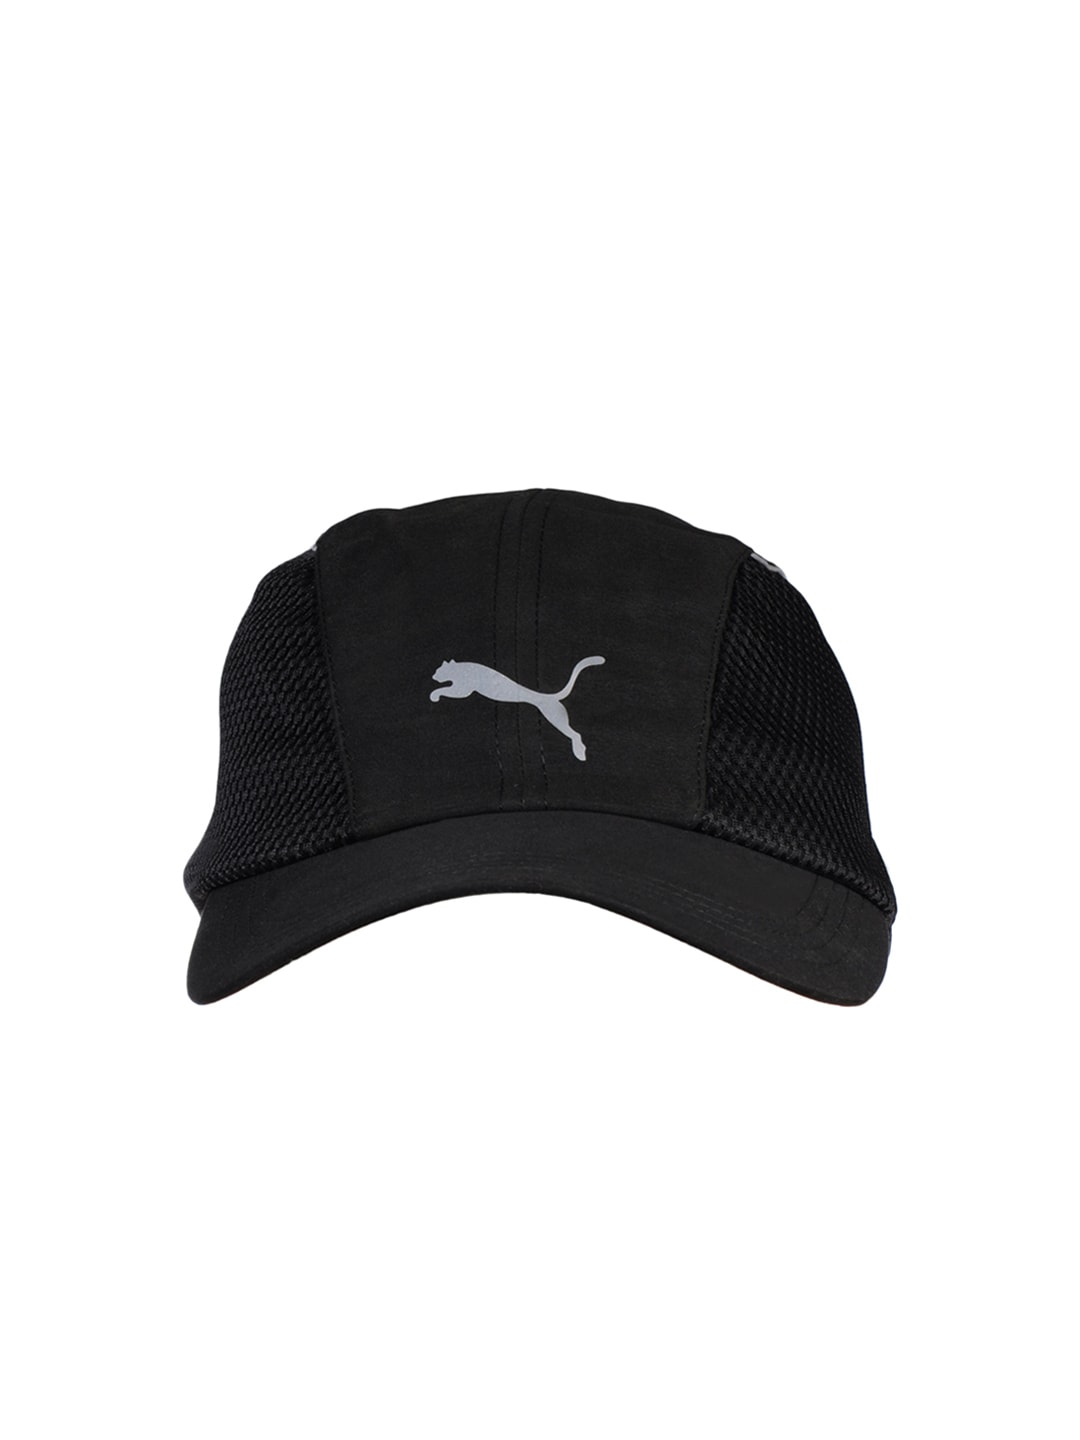 Puma Unisex Black Cap